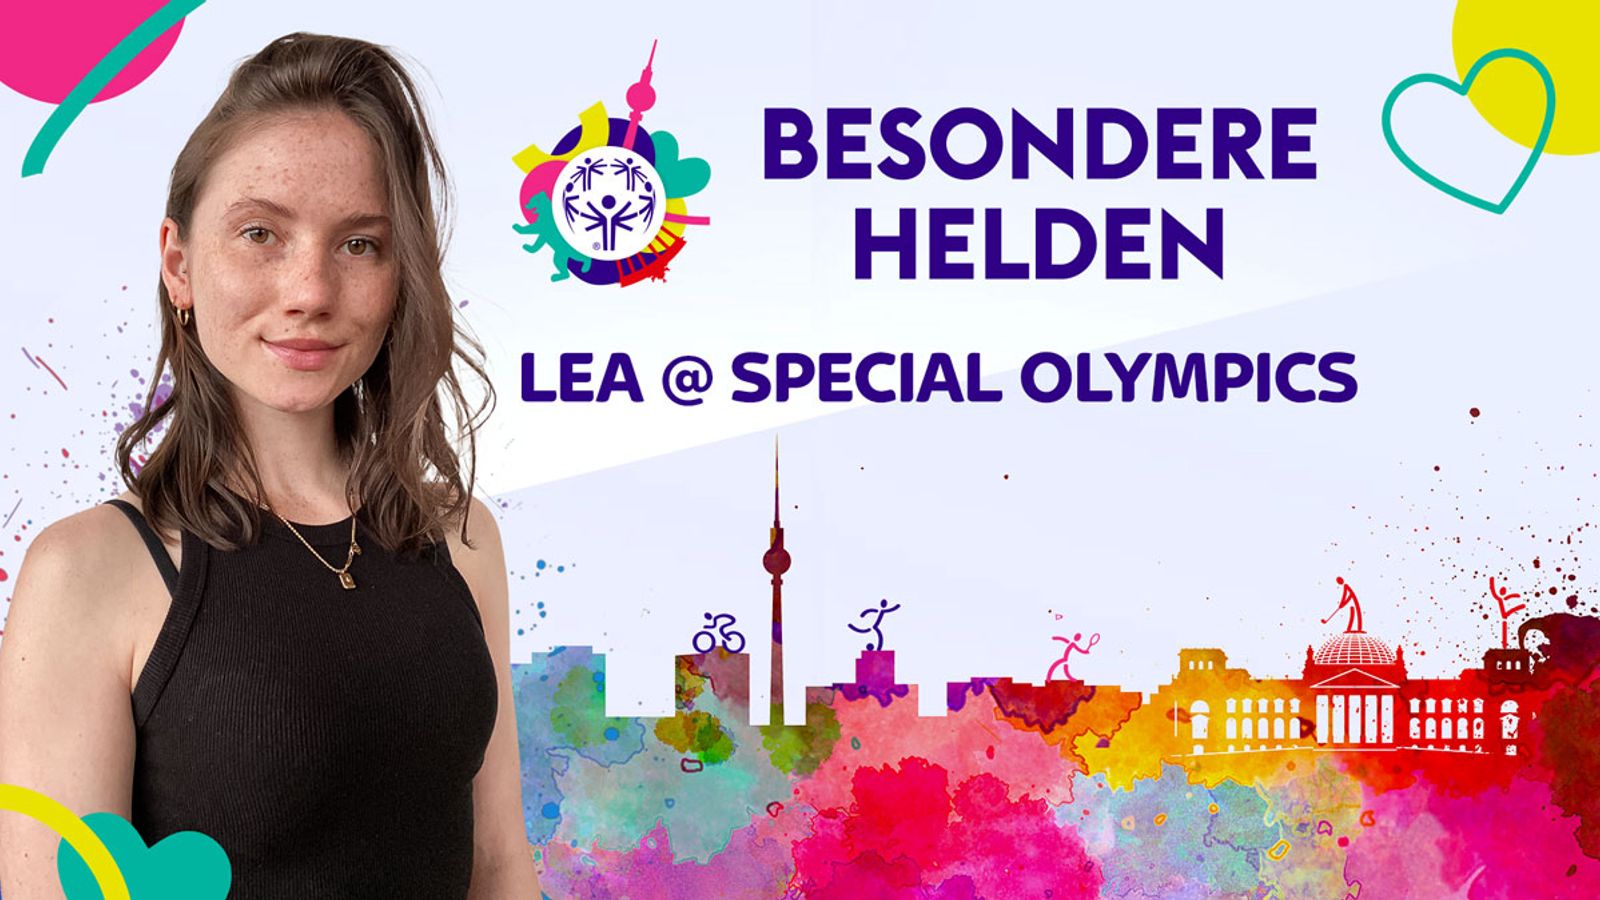 Special Olympics in Berlin Besondere Helden beim Basketball Mehr